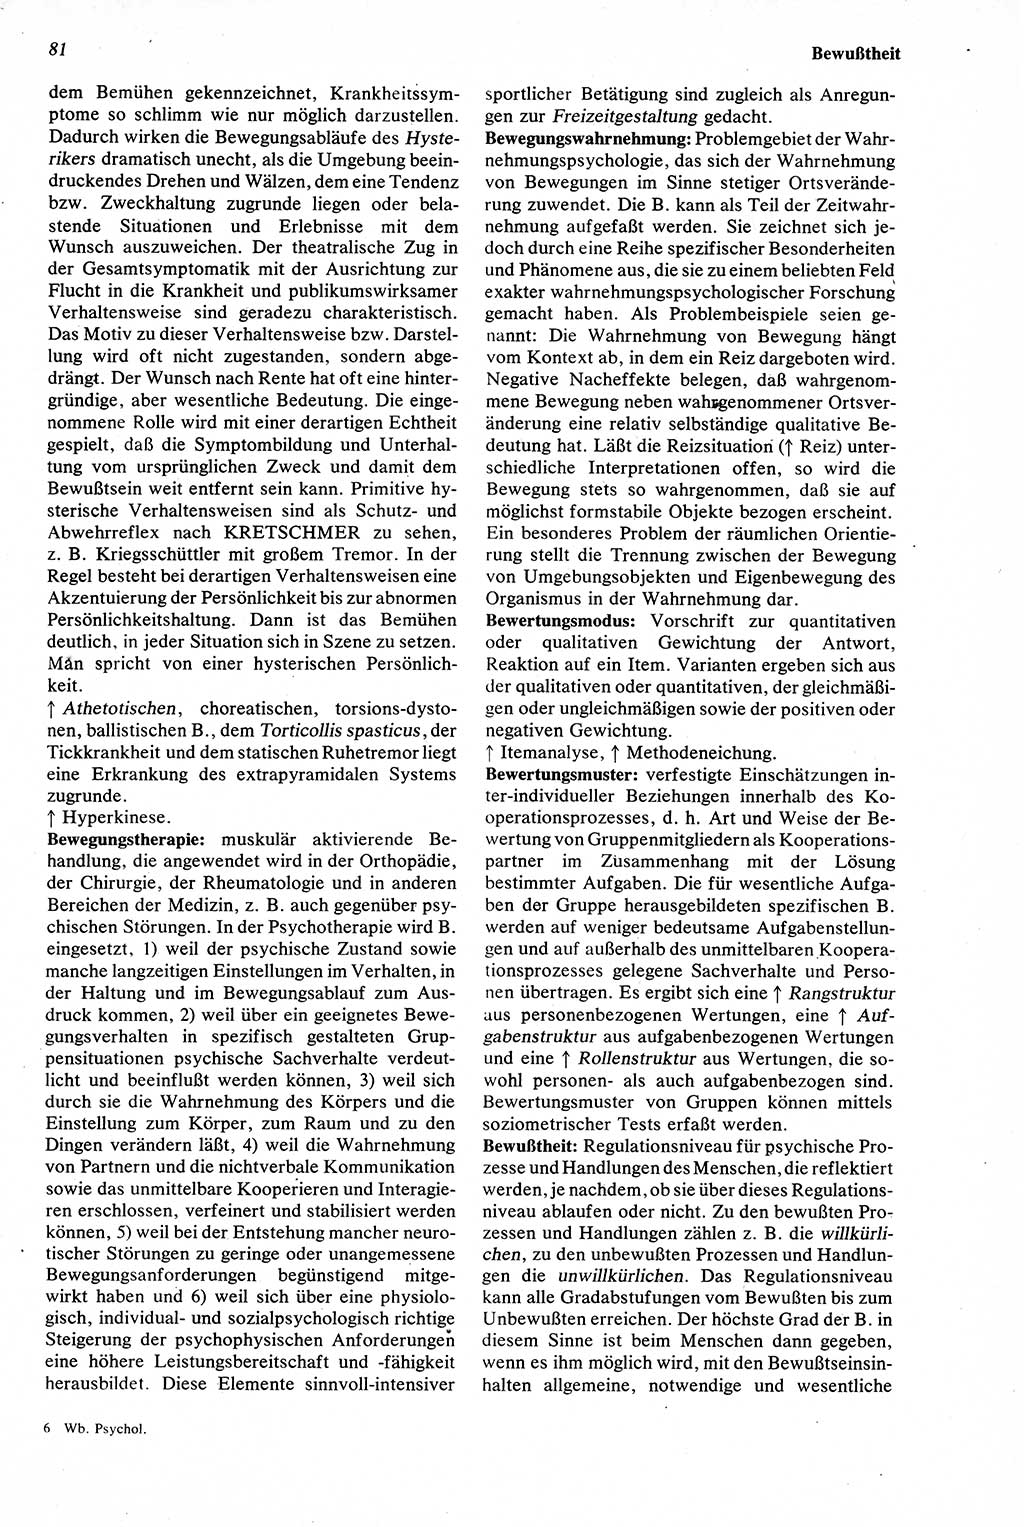 Wörterbuch der Psychologie [Deutsche Demokratische Republik (DDR)] 1976, Seite 81 (Wb. Psych. DDR 1976, S. 81)